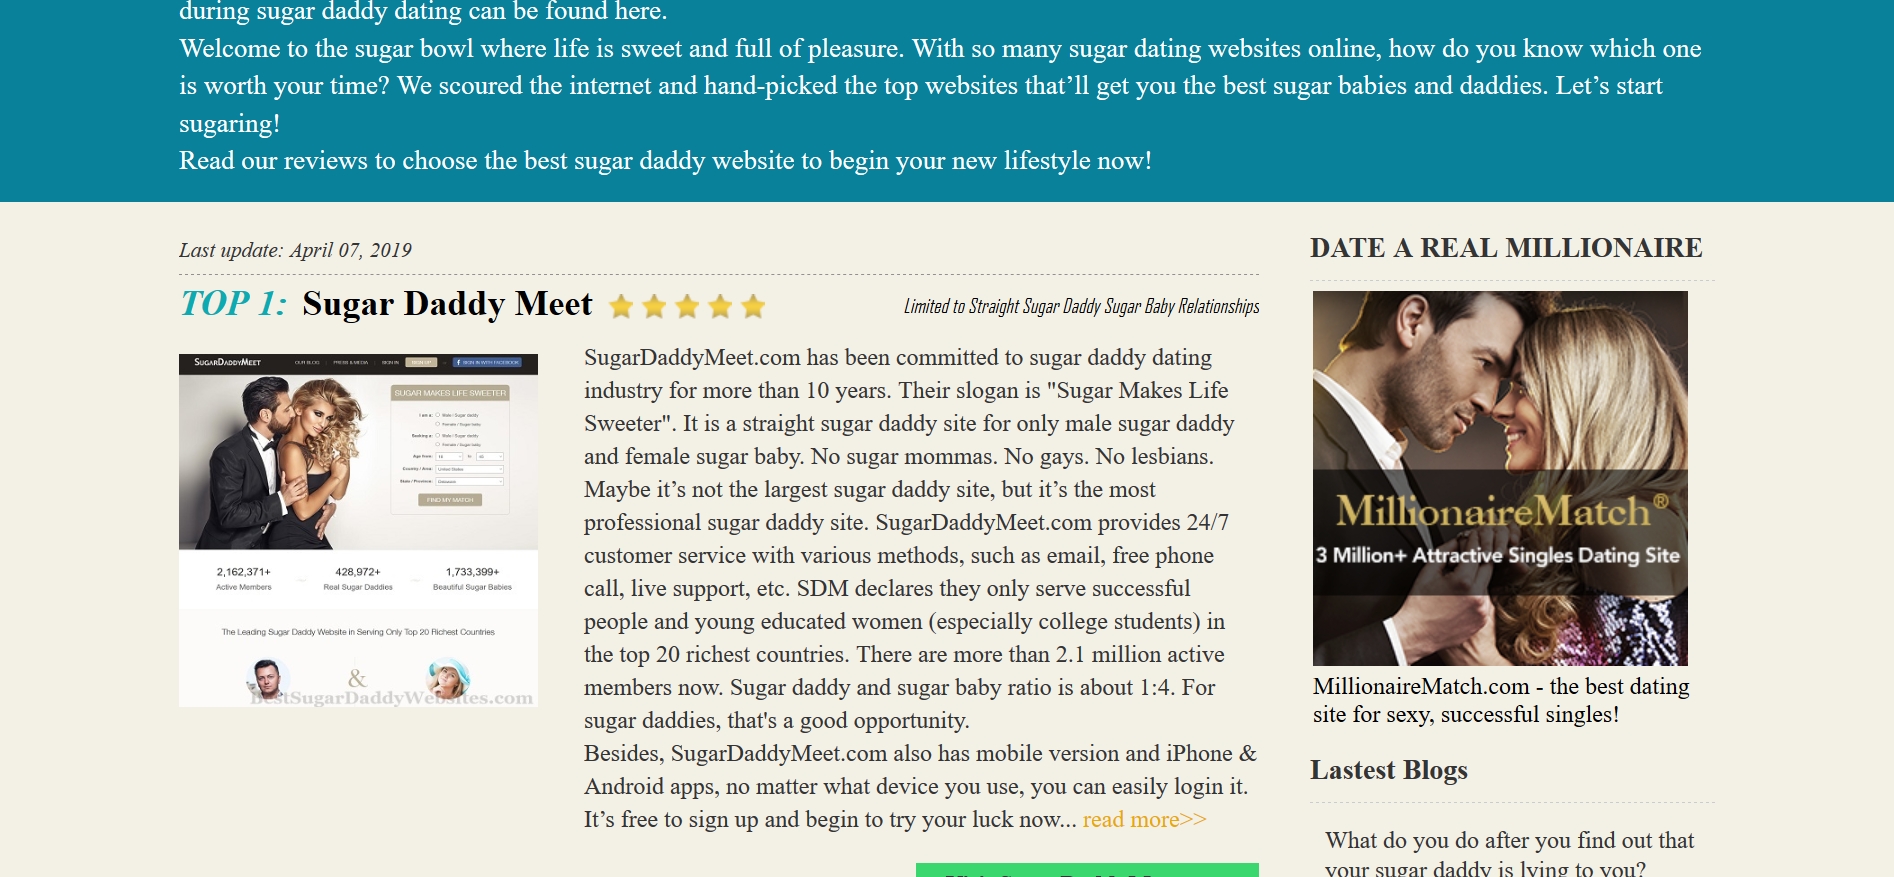 Best Sugar Daddy Websites Reviews - 2 Reviews of Bestsugardaddywebsites.com